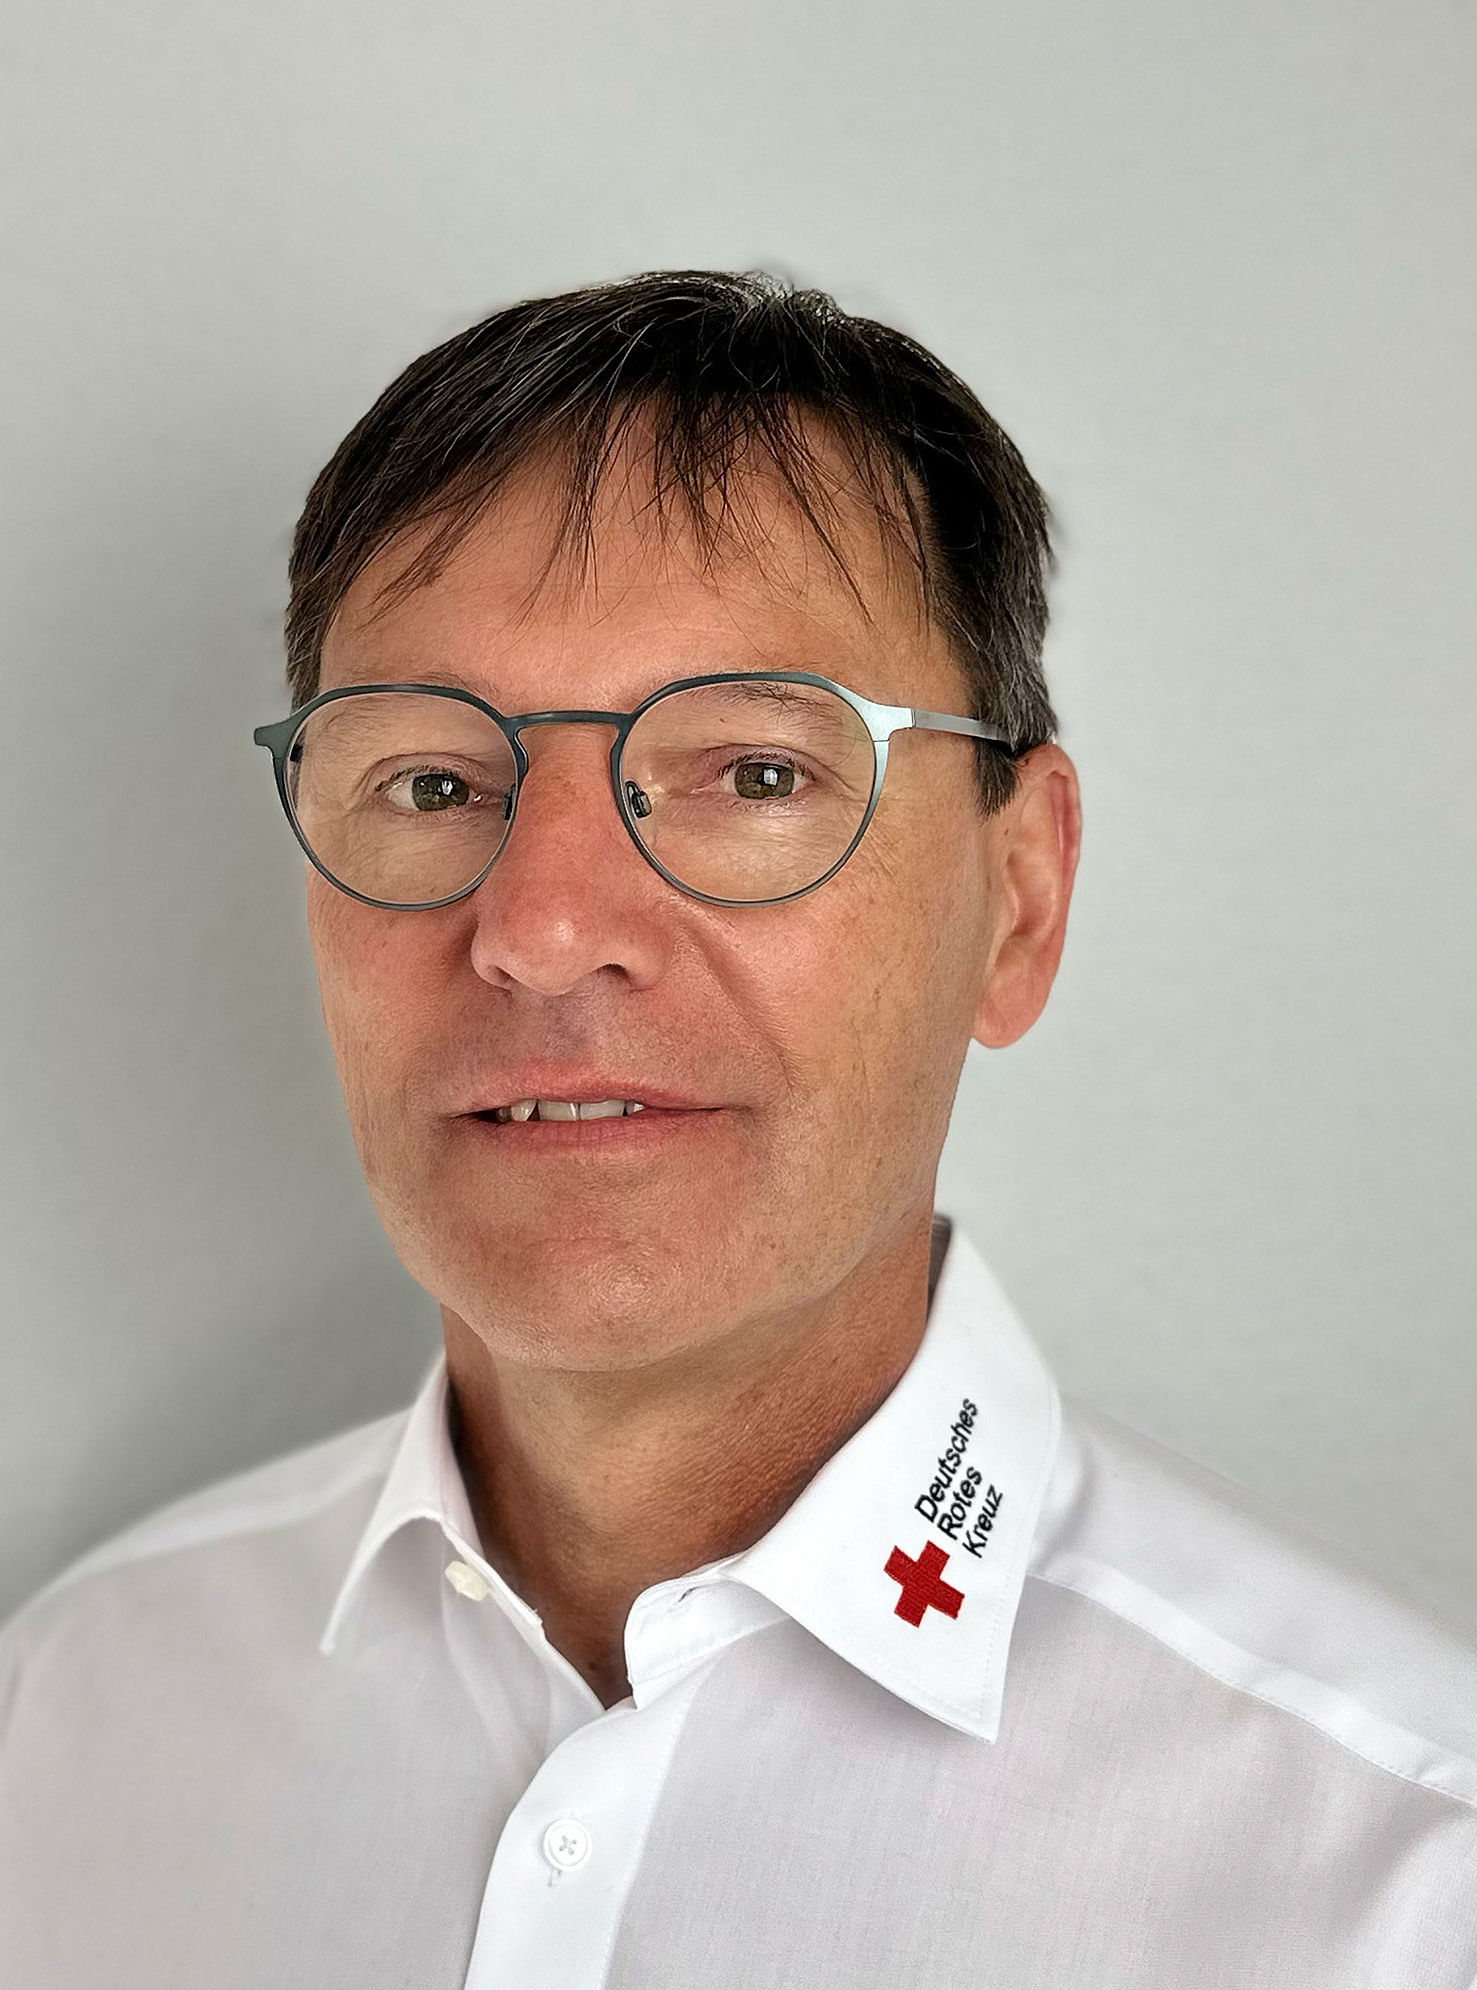 Porträtaufnahme von Jörg Stingl, Geschäftsführer der Rettungsdienst Oberes Vogtland gGmbH.